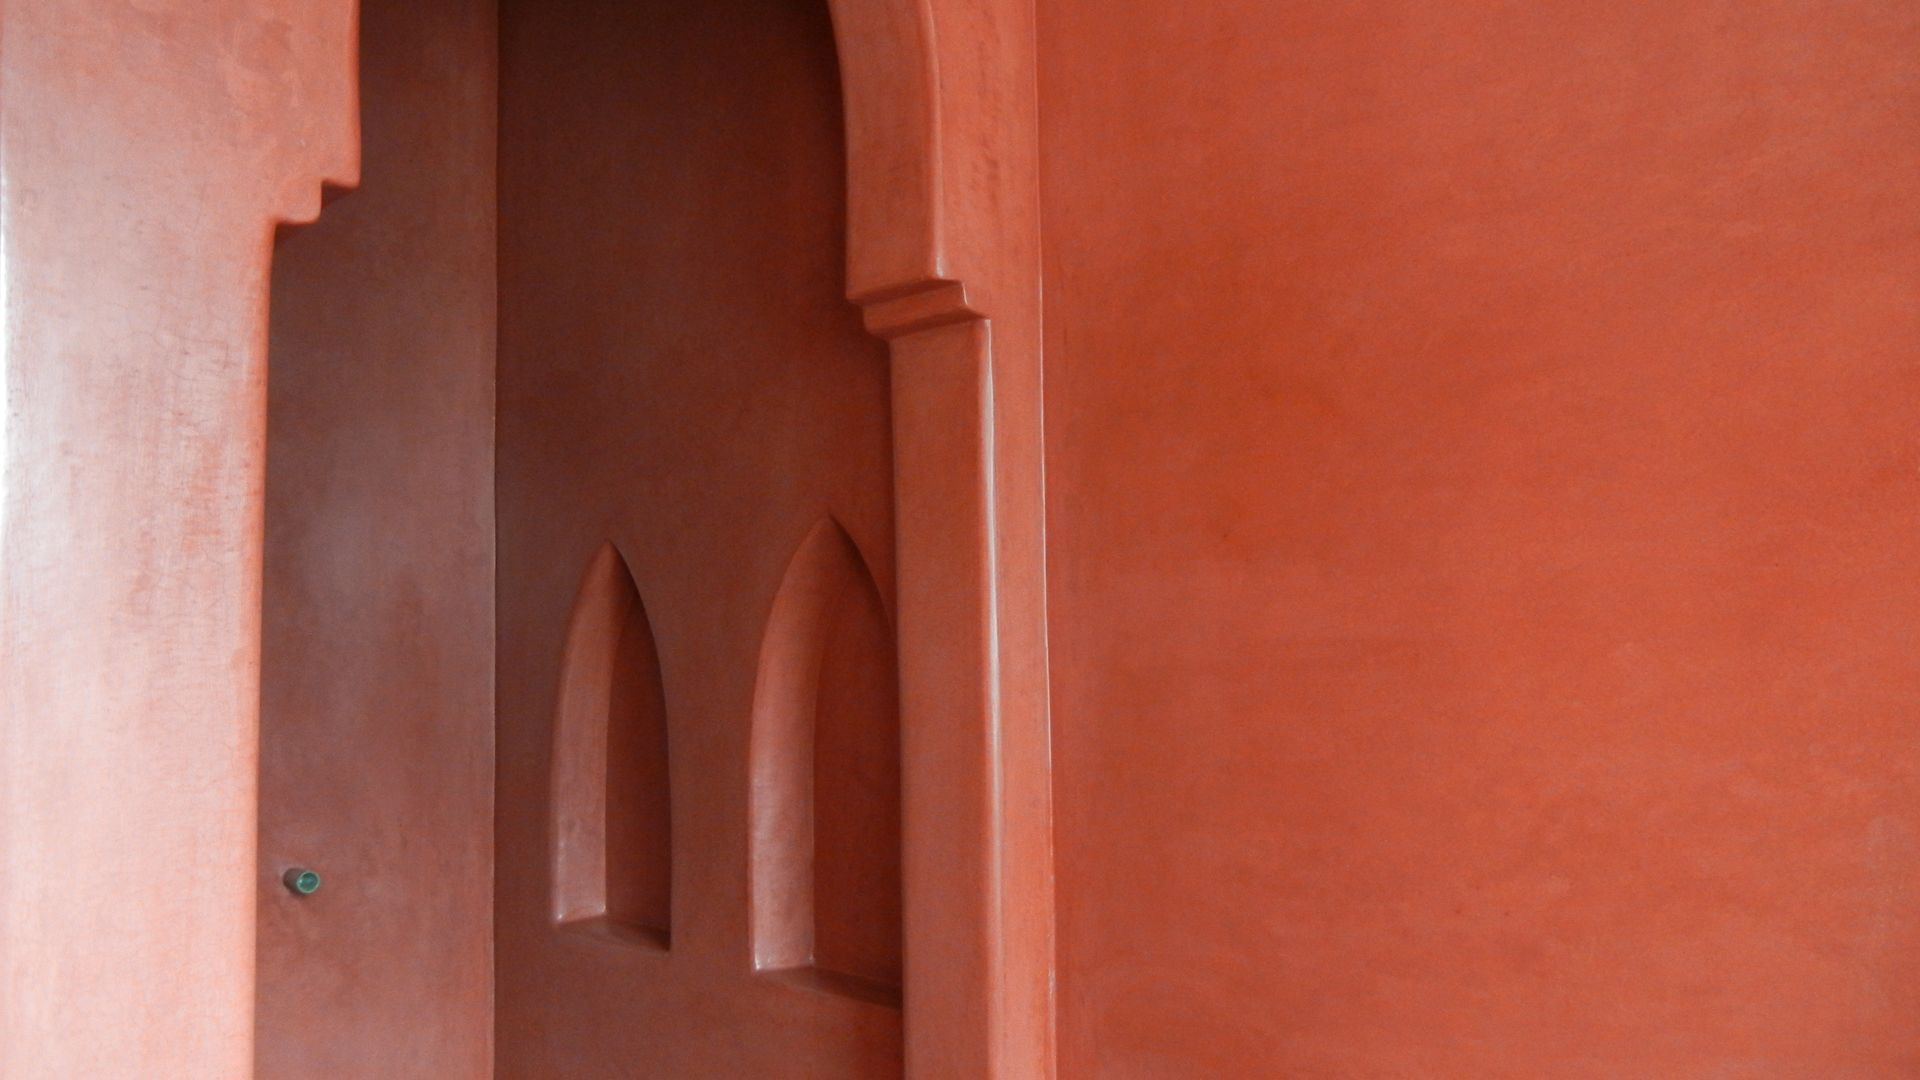 Sala da Bagno in Tadelakt Rosso Marrakech, Tadelakt keloe Tadelakt keloe Mediterranean style bathroom